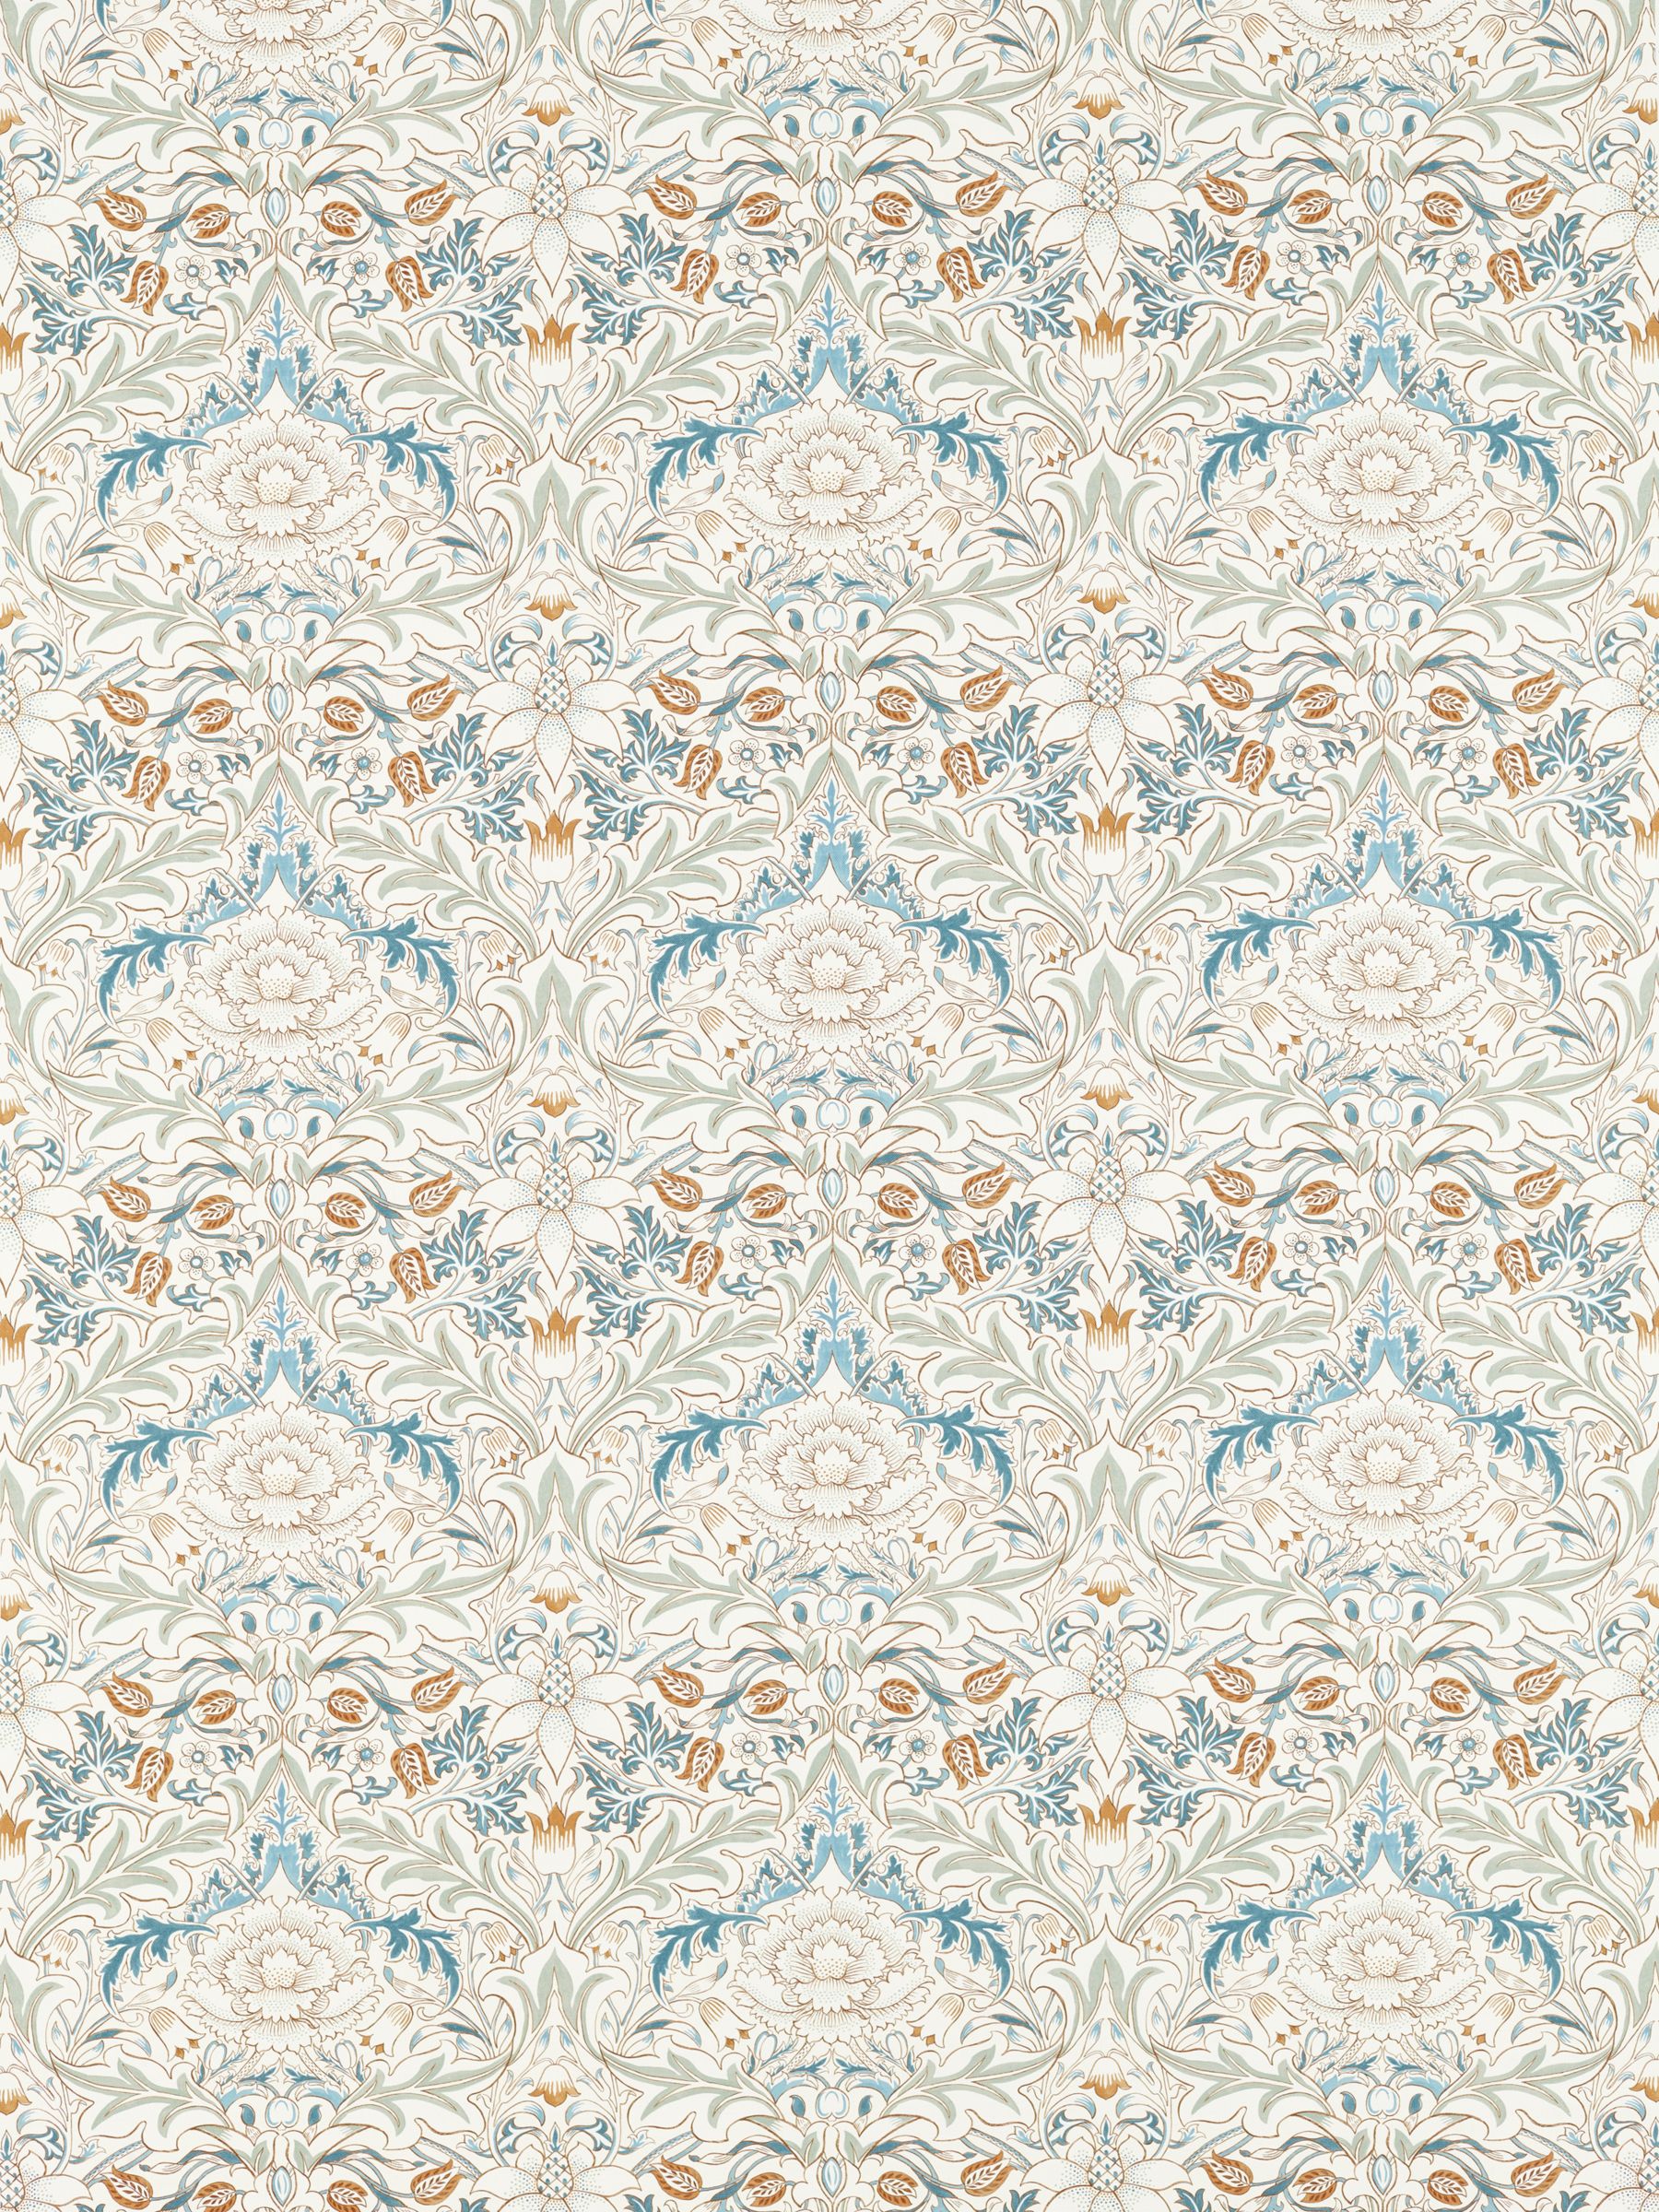 Morris & Co. Simply Severn Furnishing Fabric, Bayleaf/Annatto